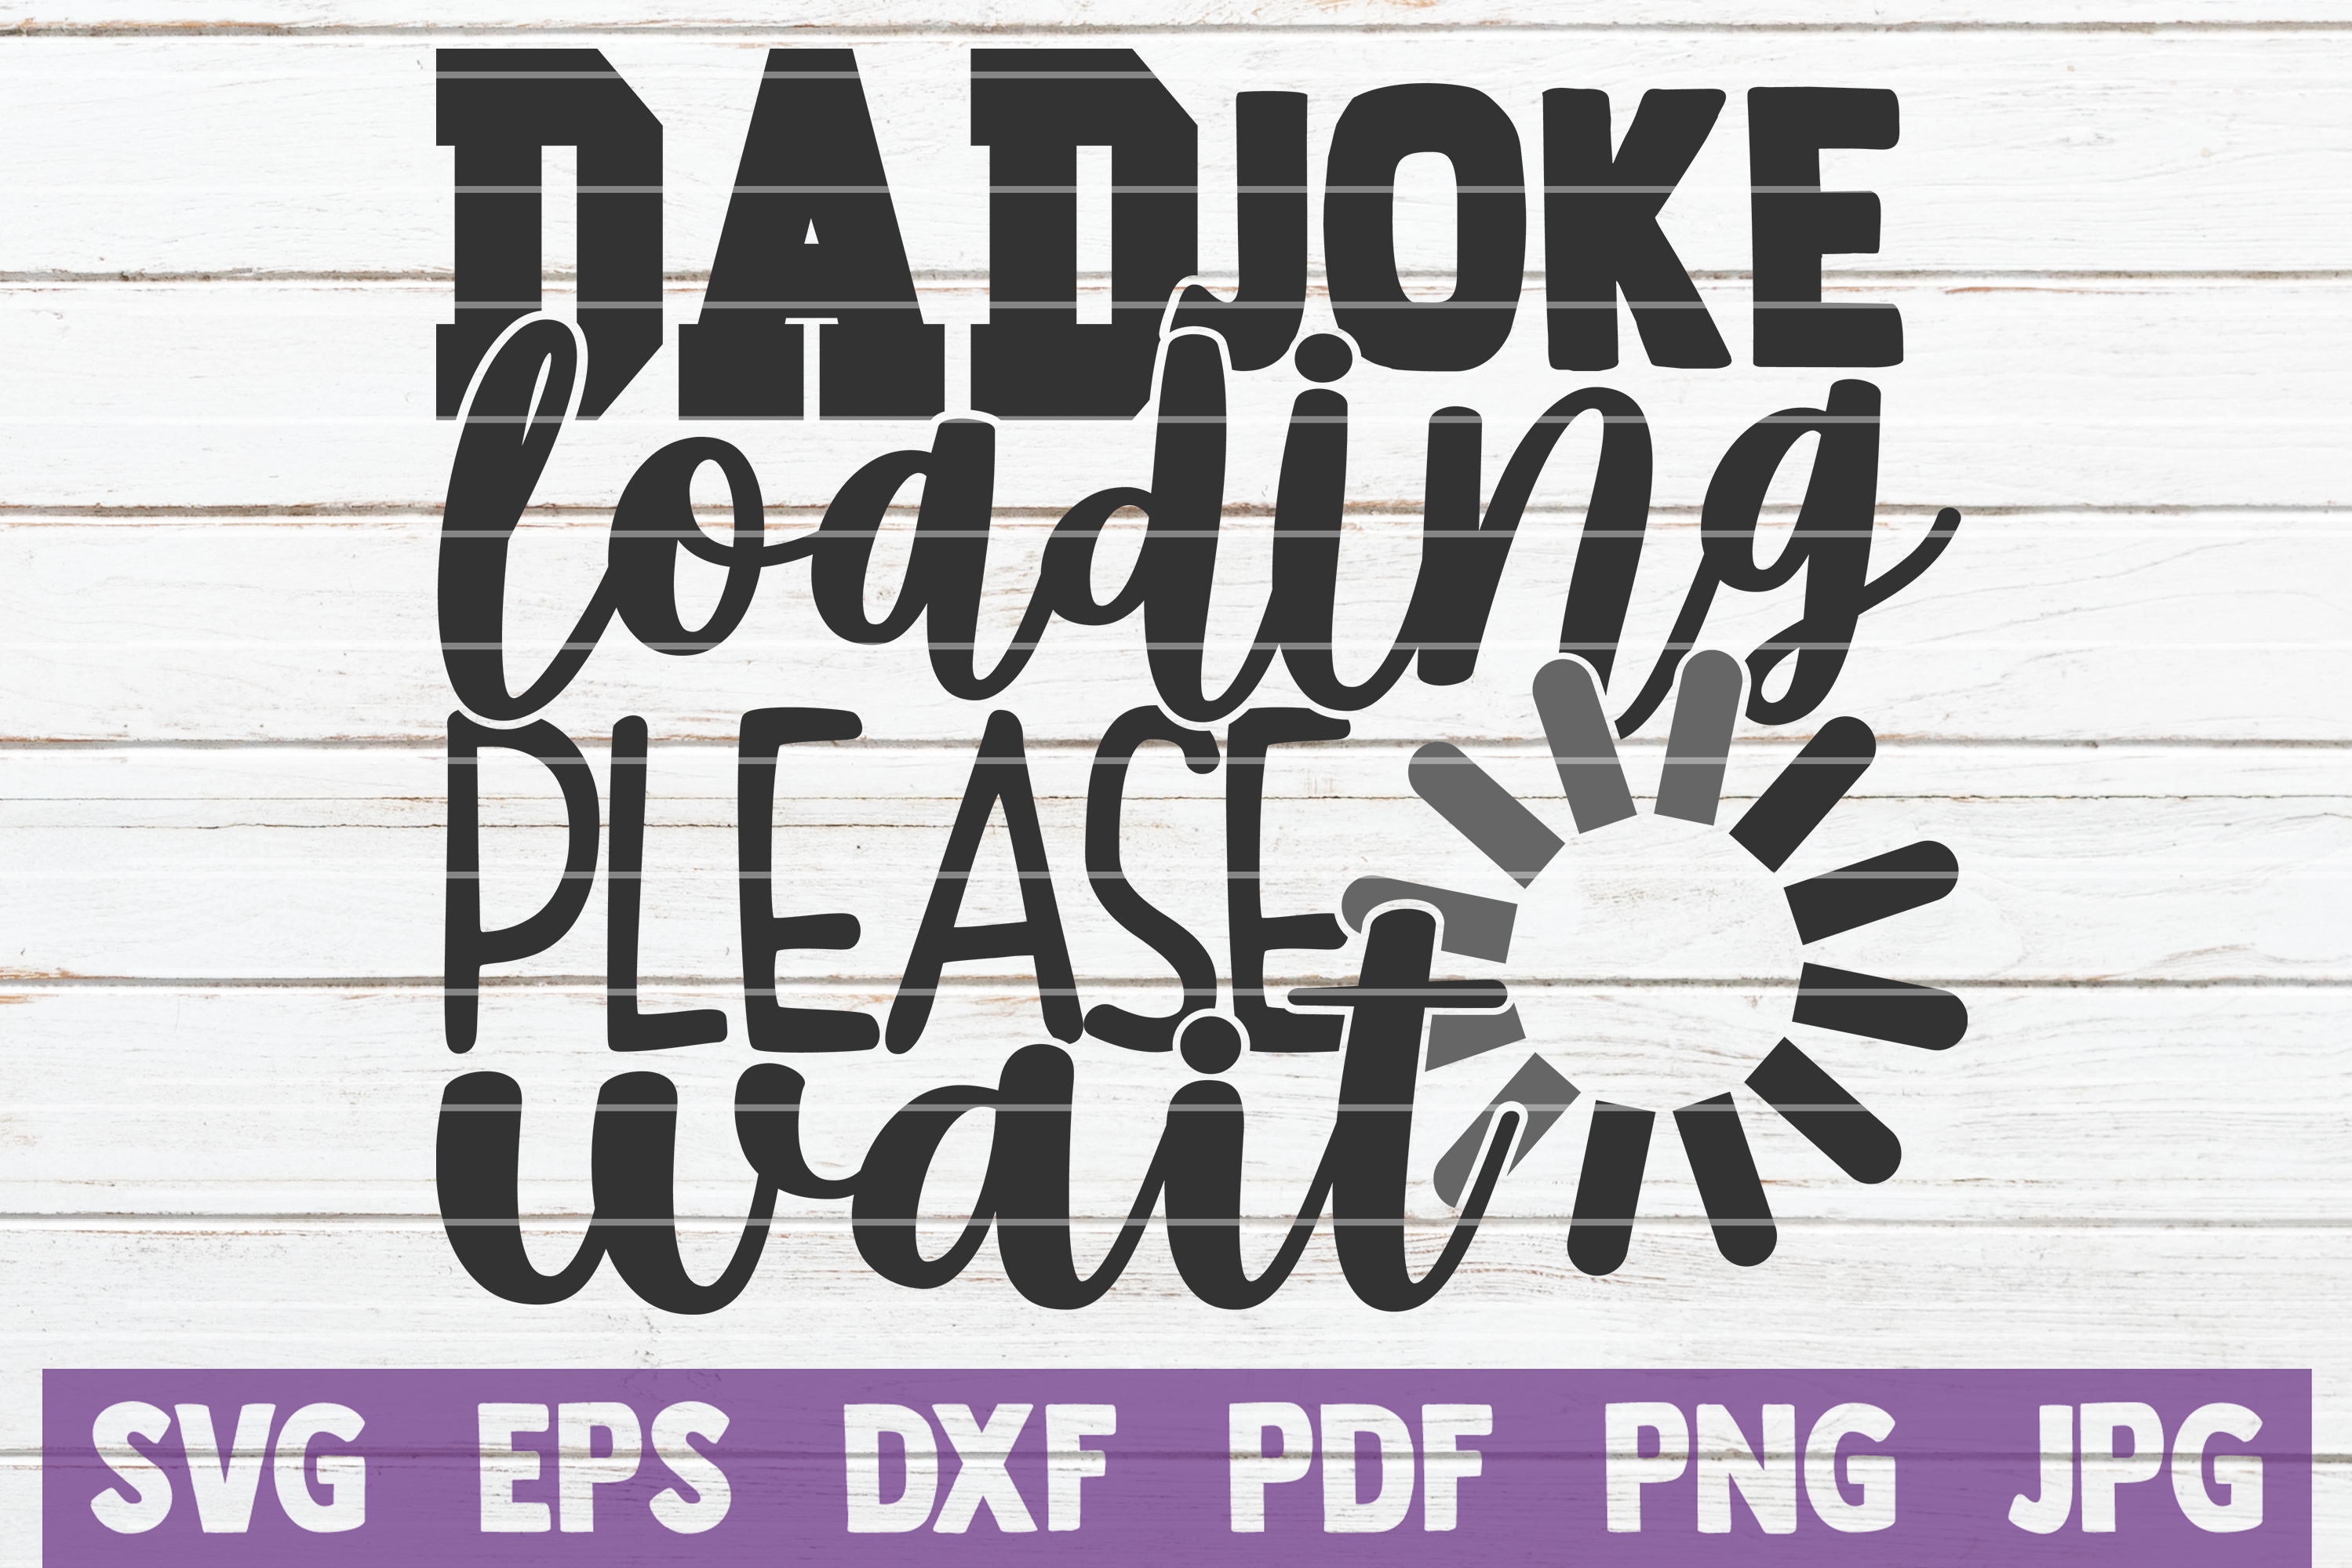 Download Dad Joke Loading Please Wait SVG Cut File